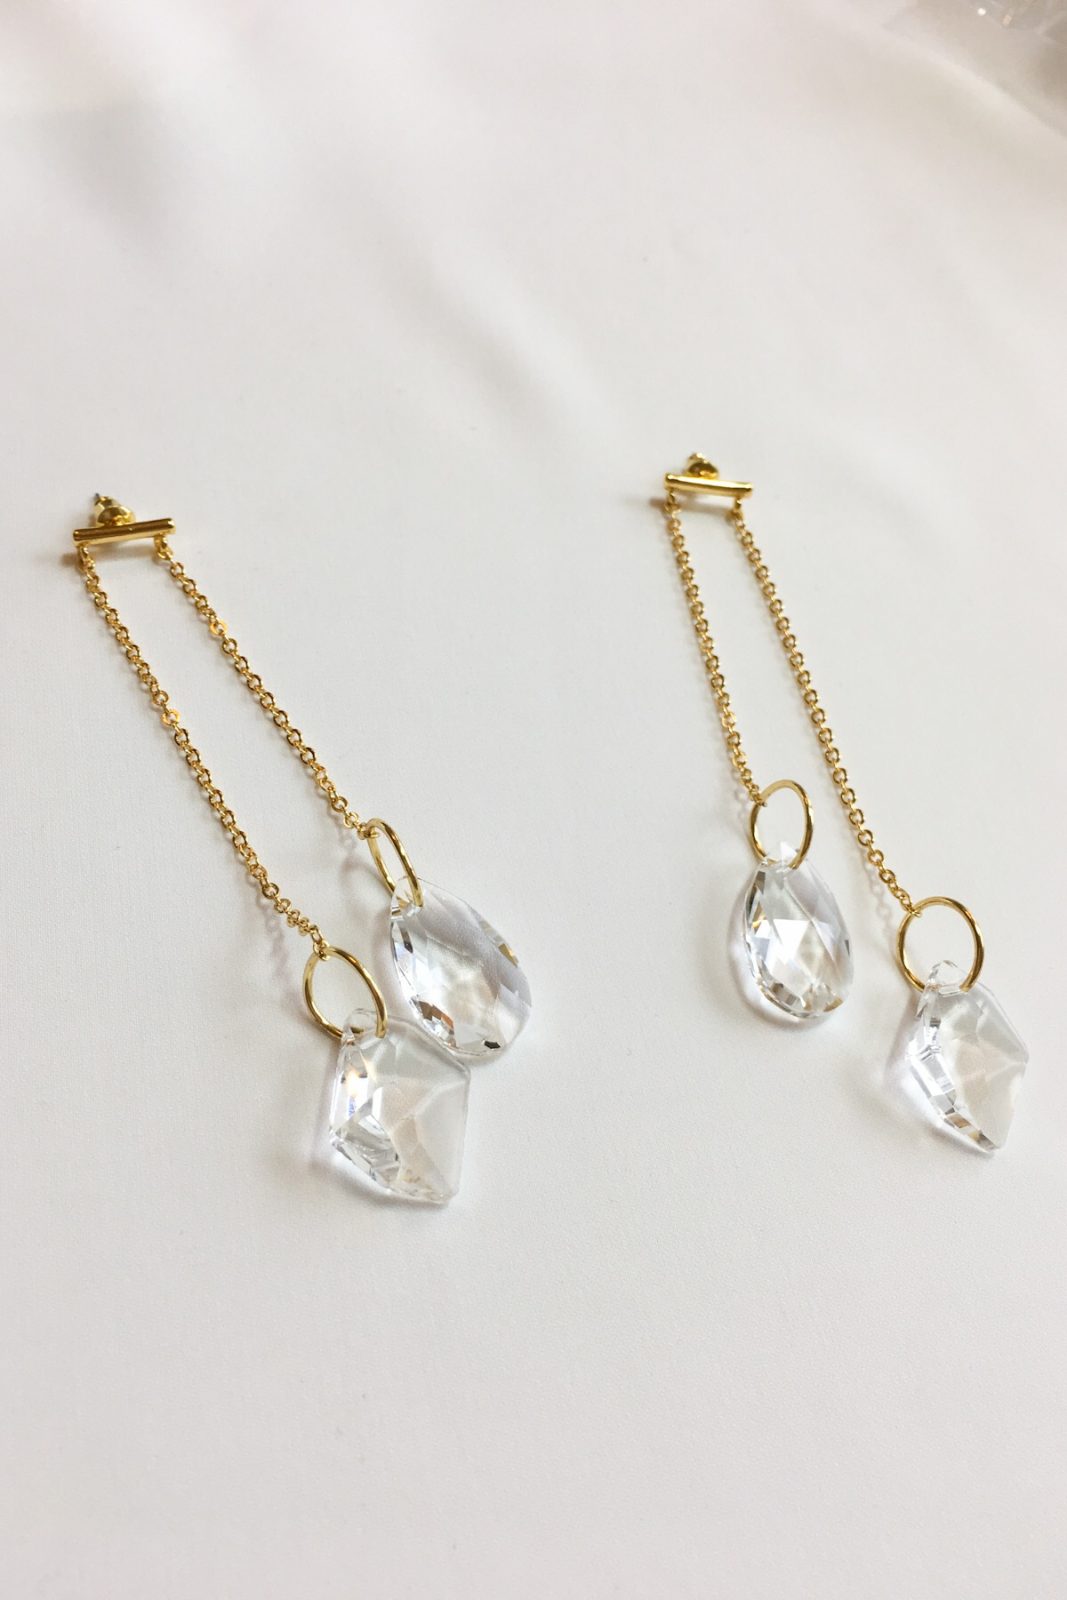 SKYE modern minimalist women fashion accessories Lumiere 18K Gold Austrian Crystal Drop Earrings